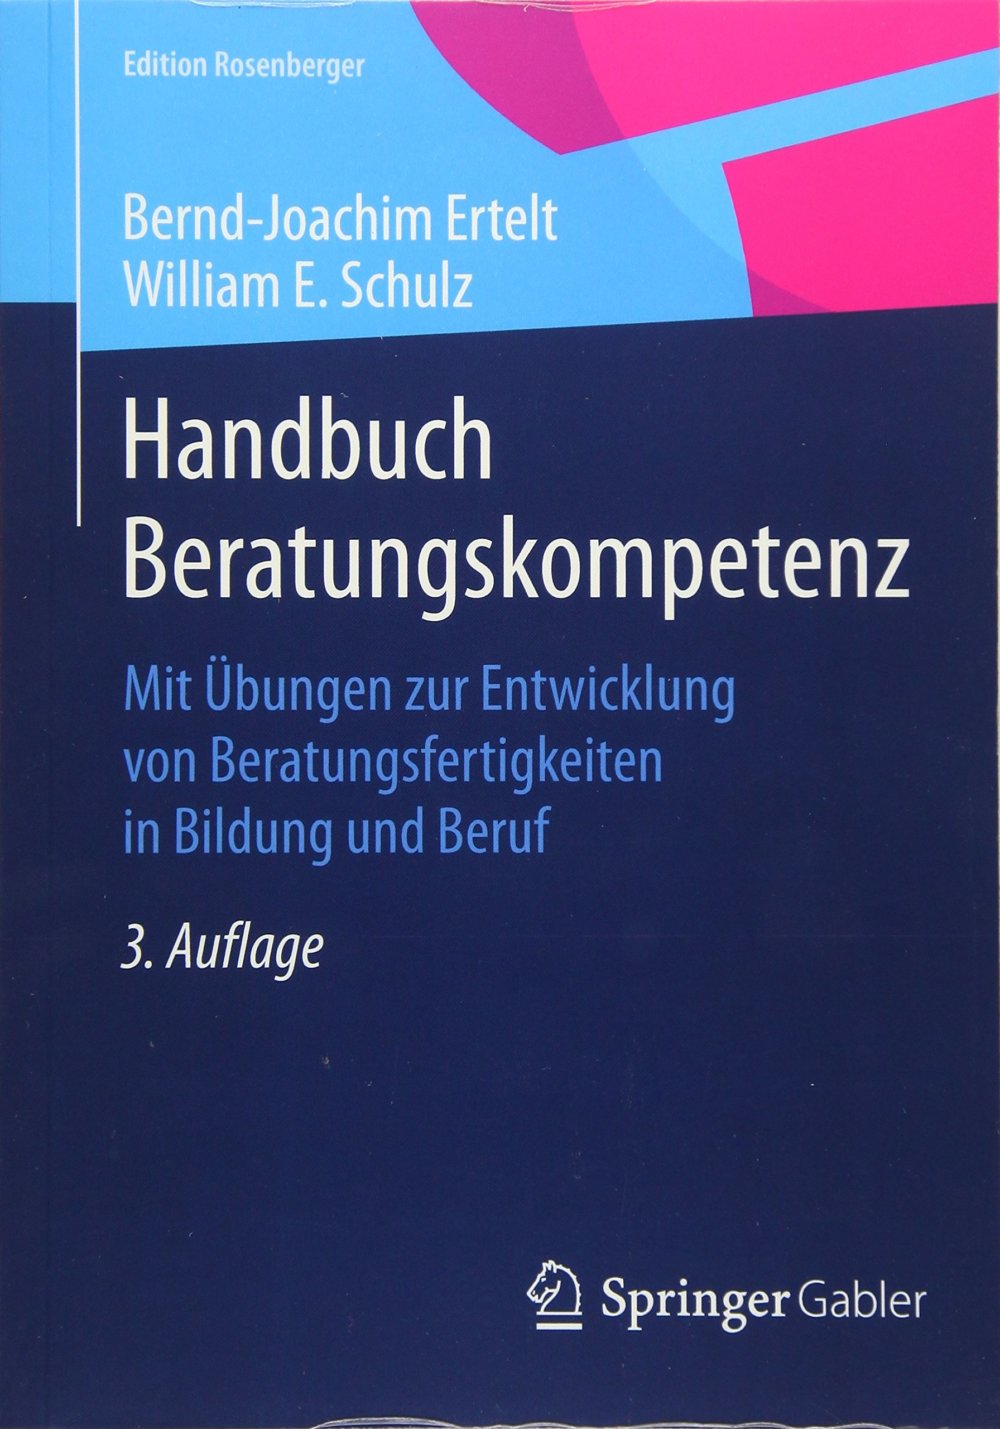 Handbuch Beratungskompetenz: Mit Übungen zur Entwicklung von Beratungsfertigkeiten (Amazon)